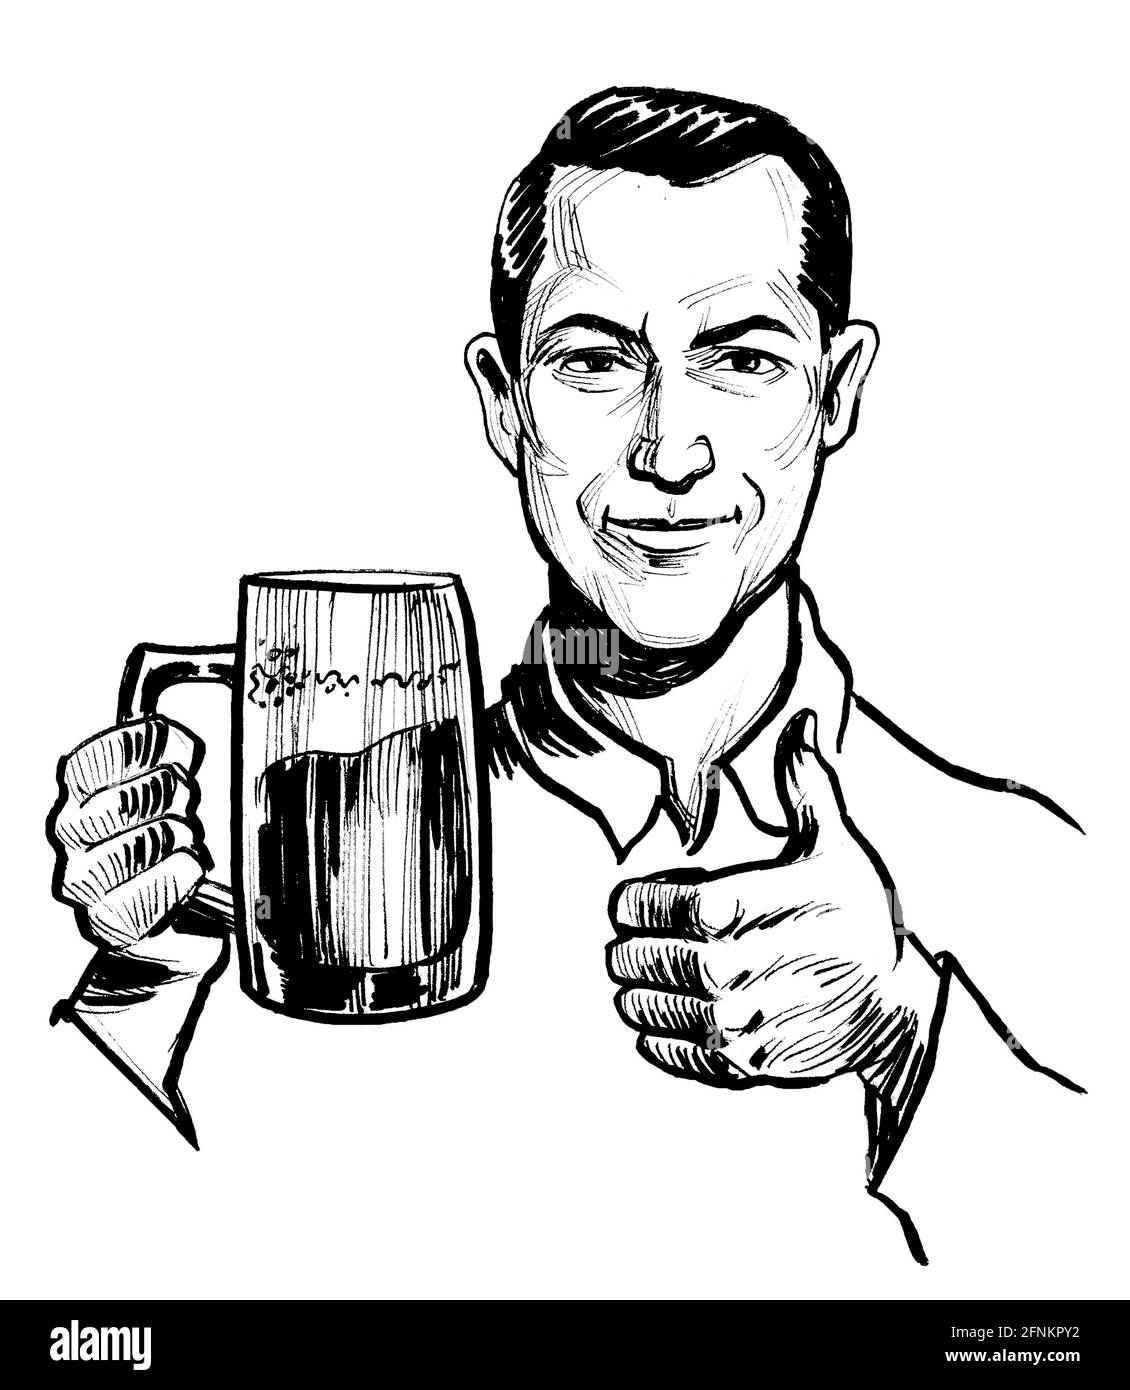 Mann trinkt einen Becher Bier. Tinte schwarz-weiß Zeichnung Stockfoto